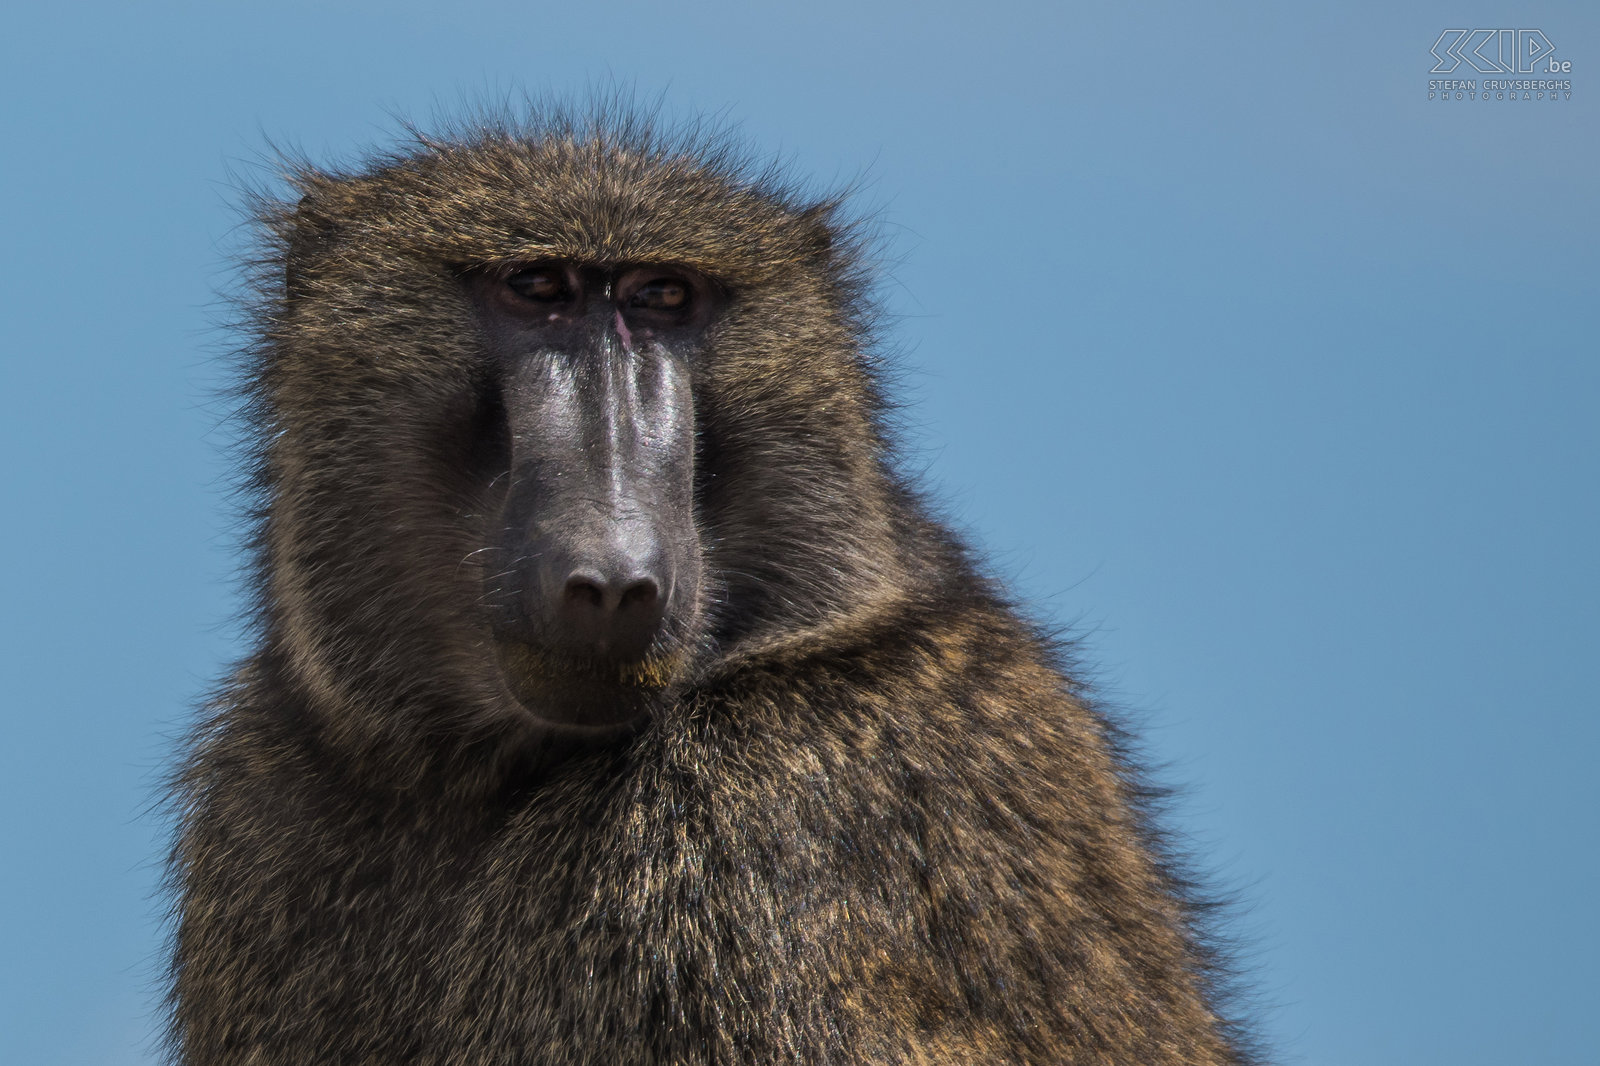 Bulbula Cliffs - Anubisbaviaan De groene baviaan (Papio anubis) is een grote sterke apensoort en een omnivore opportunist. Hij eet vooral gras, wortels, bladeren en fruit, maar ook insecten en kleine gewervelde dieren. Stefan Cruysberghs